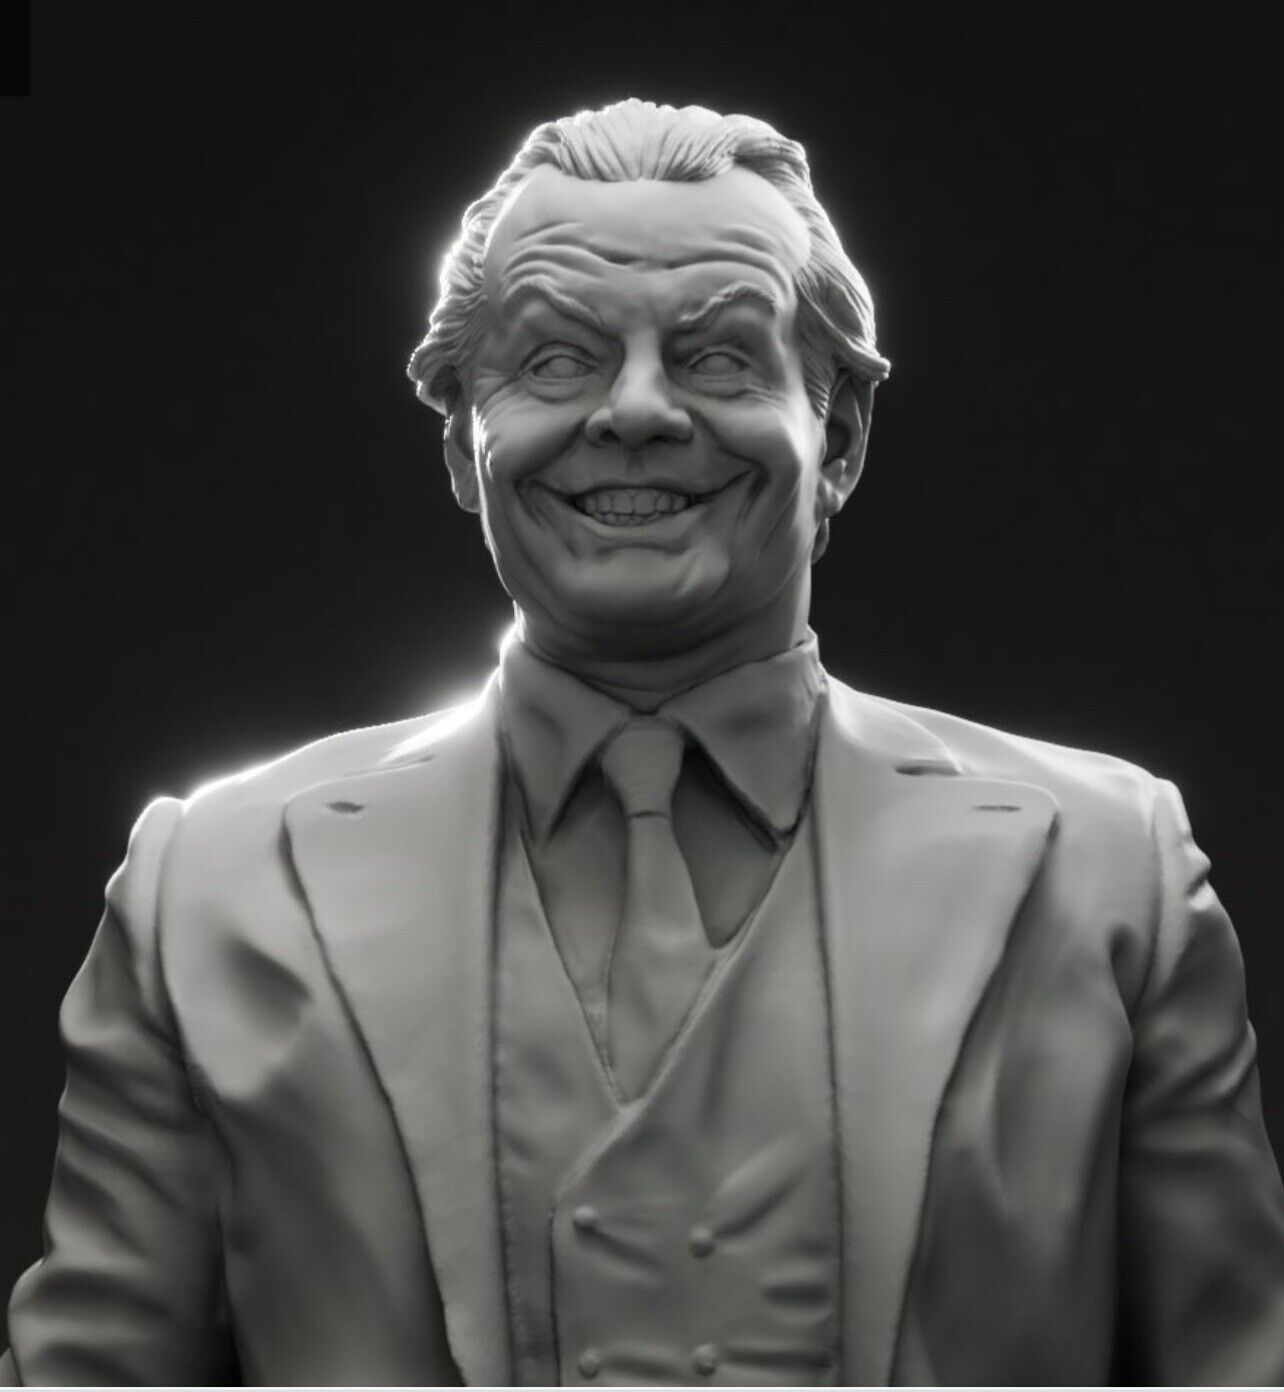 Jack Nicholson - The Joker - Batman 3D Bust HUGE 241mm